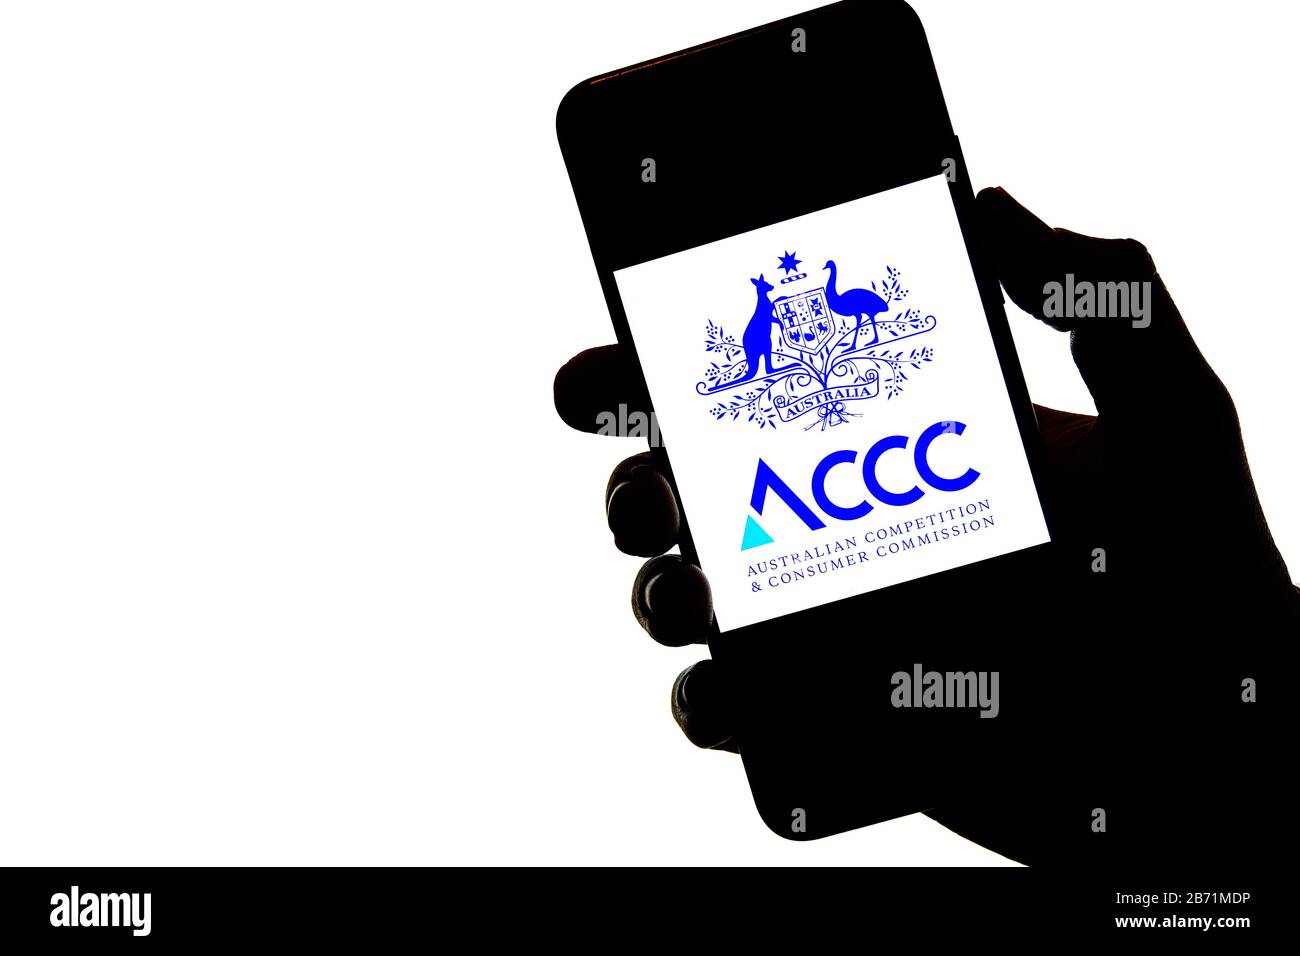 Stone / Reino Unido - Marzo 11 2020: ACCC Australian Competition and Consumer Commission logo en la silueta del teléfono móvil en una mano. Foto de stock